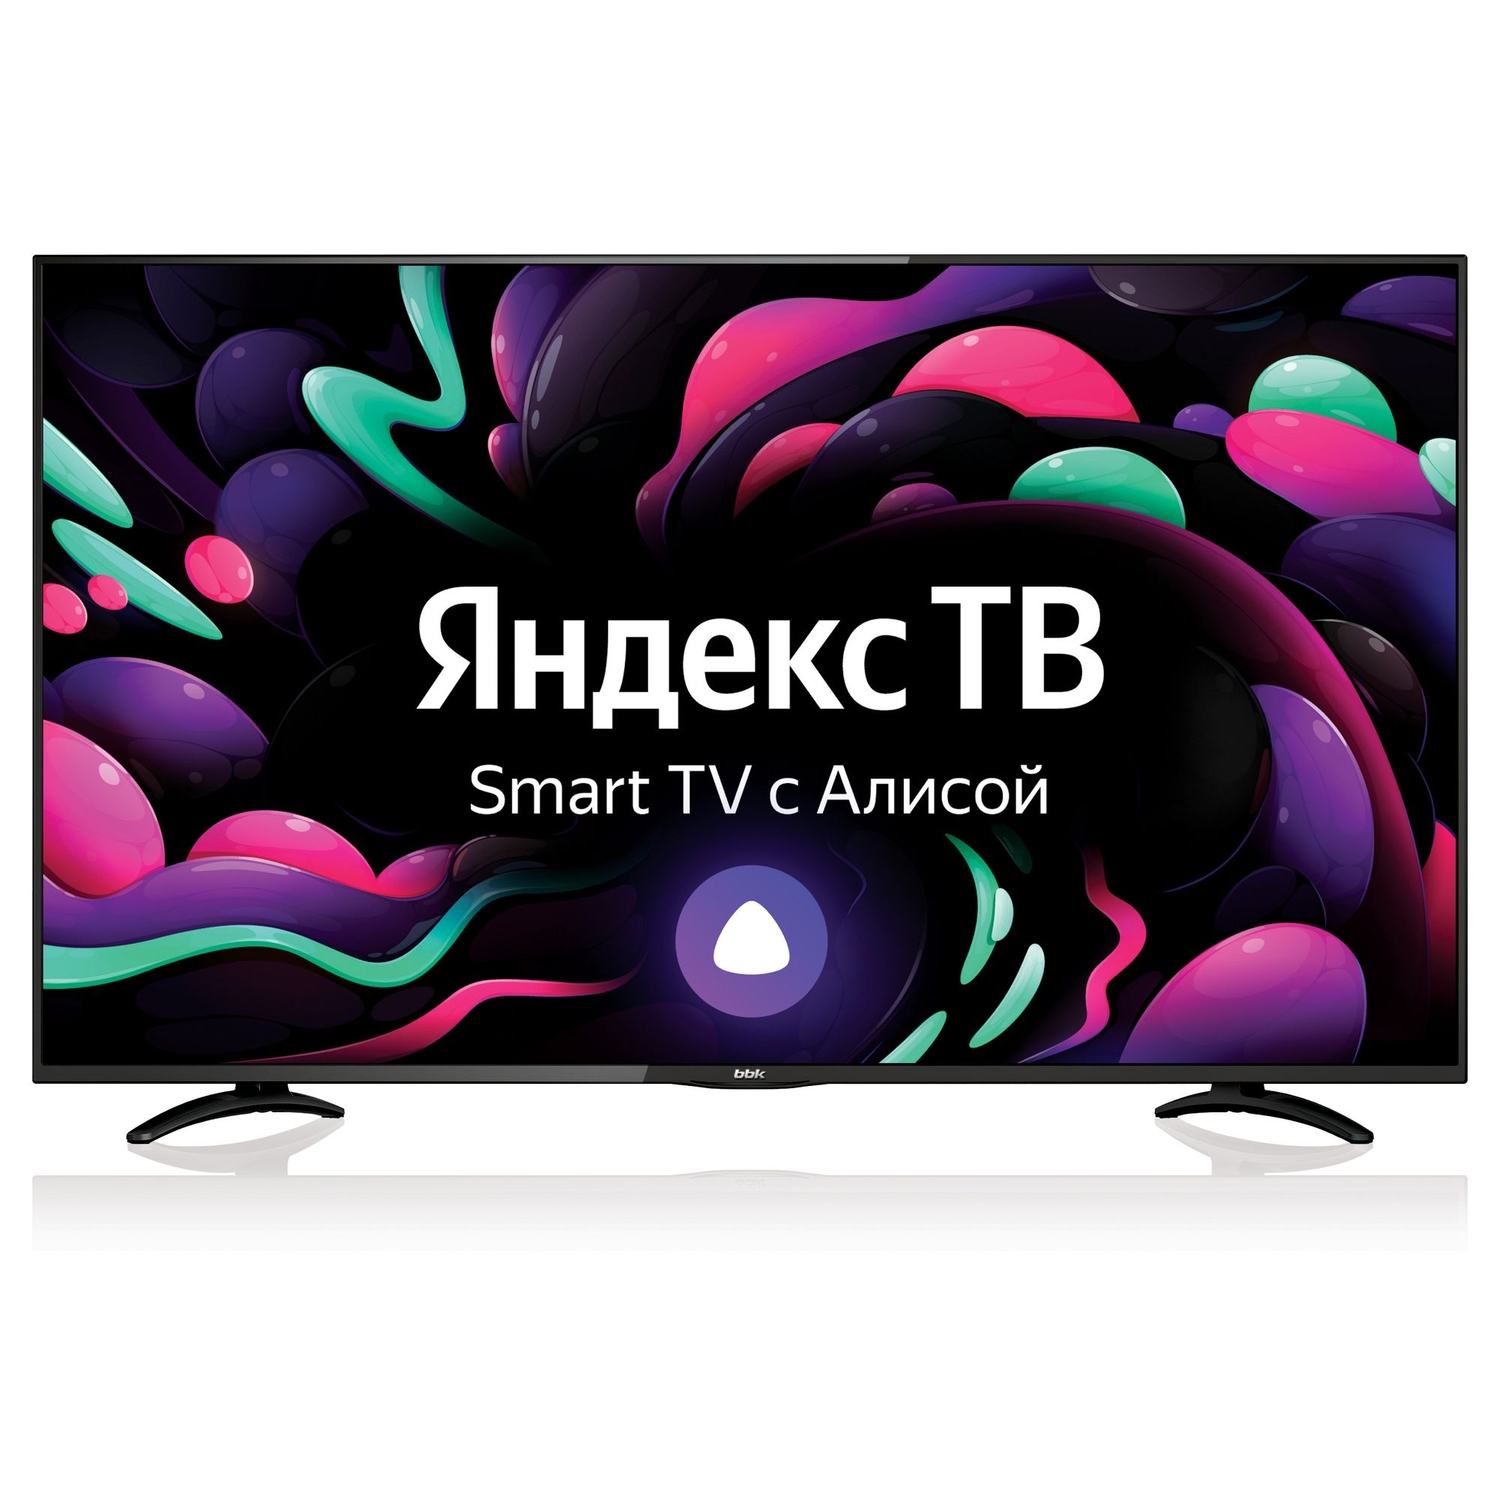 Телевизор BBK 50 50LEX-8289/UTS2C Яндекс ТВ черный телевизор bbk 50 50lex 8289 uts2c яндекс тв черный